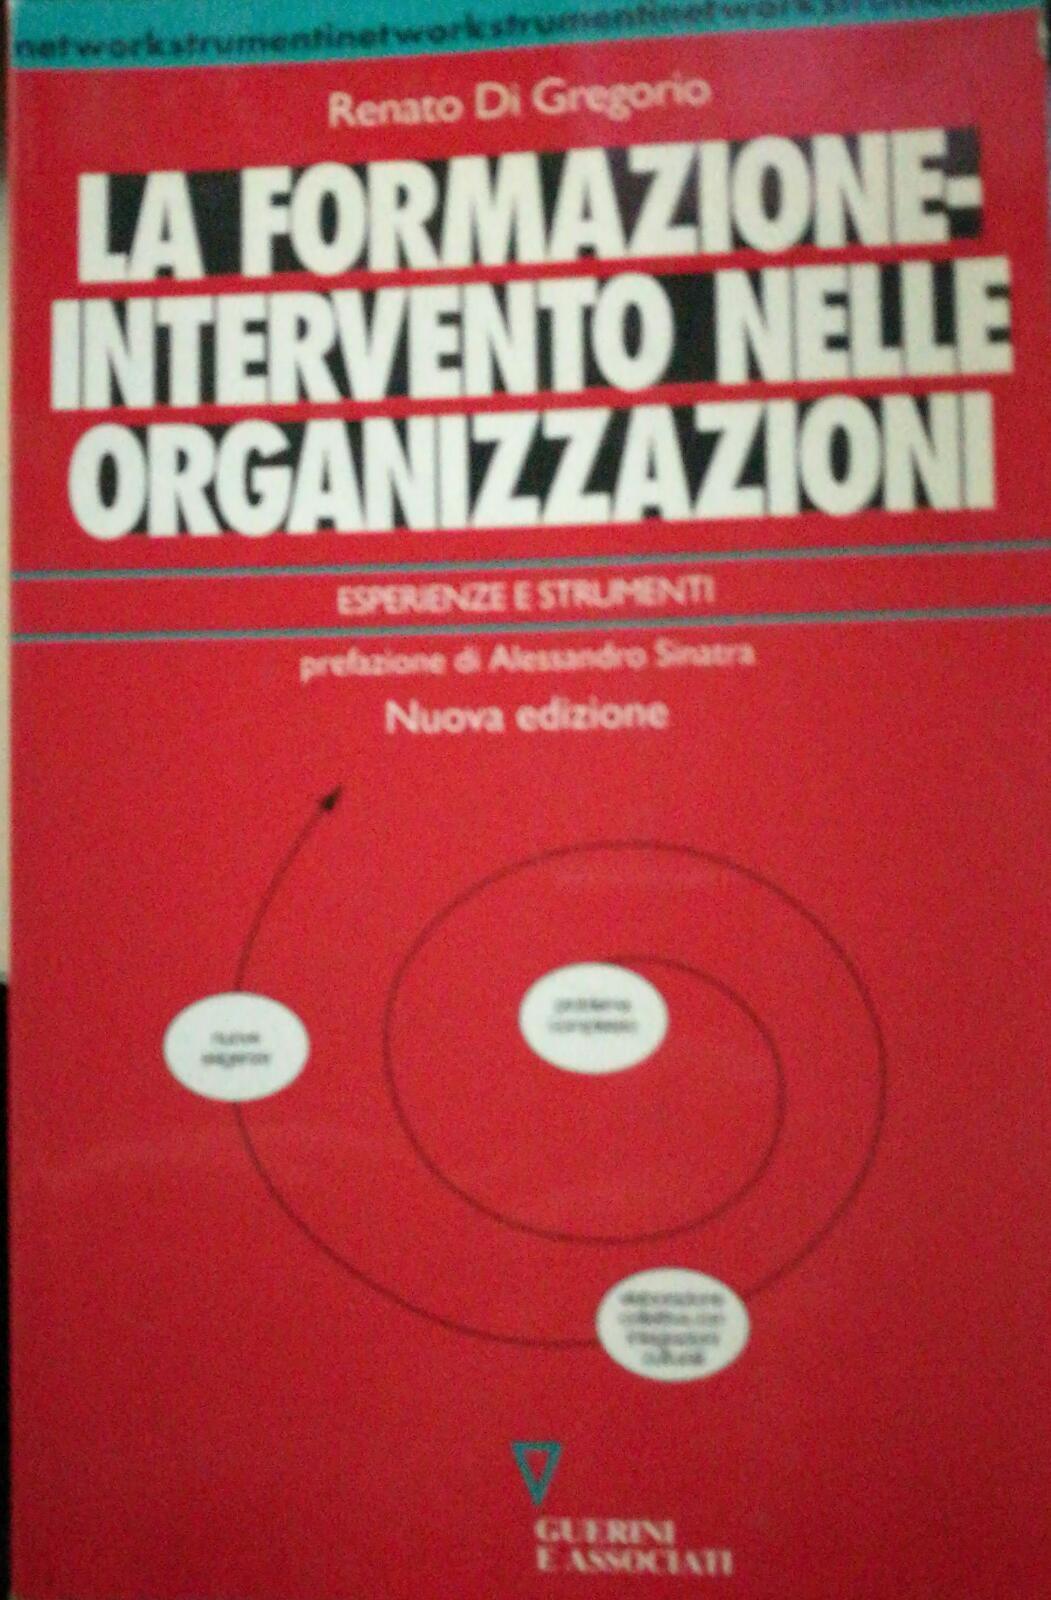 La formazione-Intervento nelle organizzazioni - Di Gregorio - 2002 - Guerrini E 